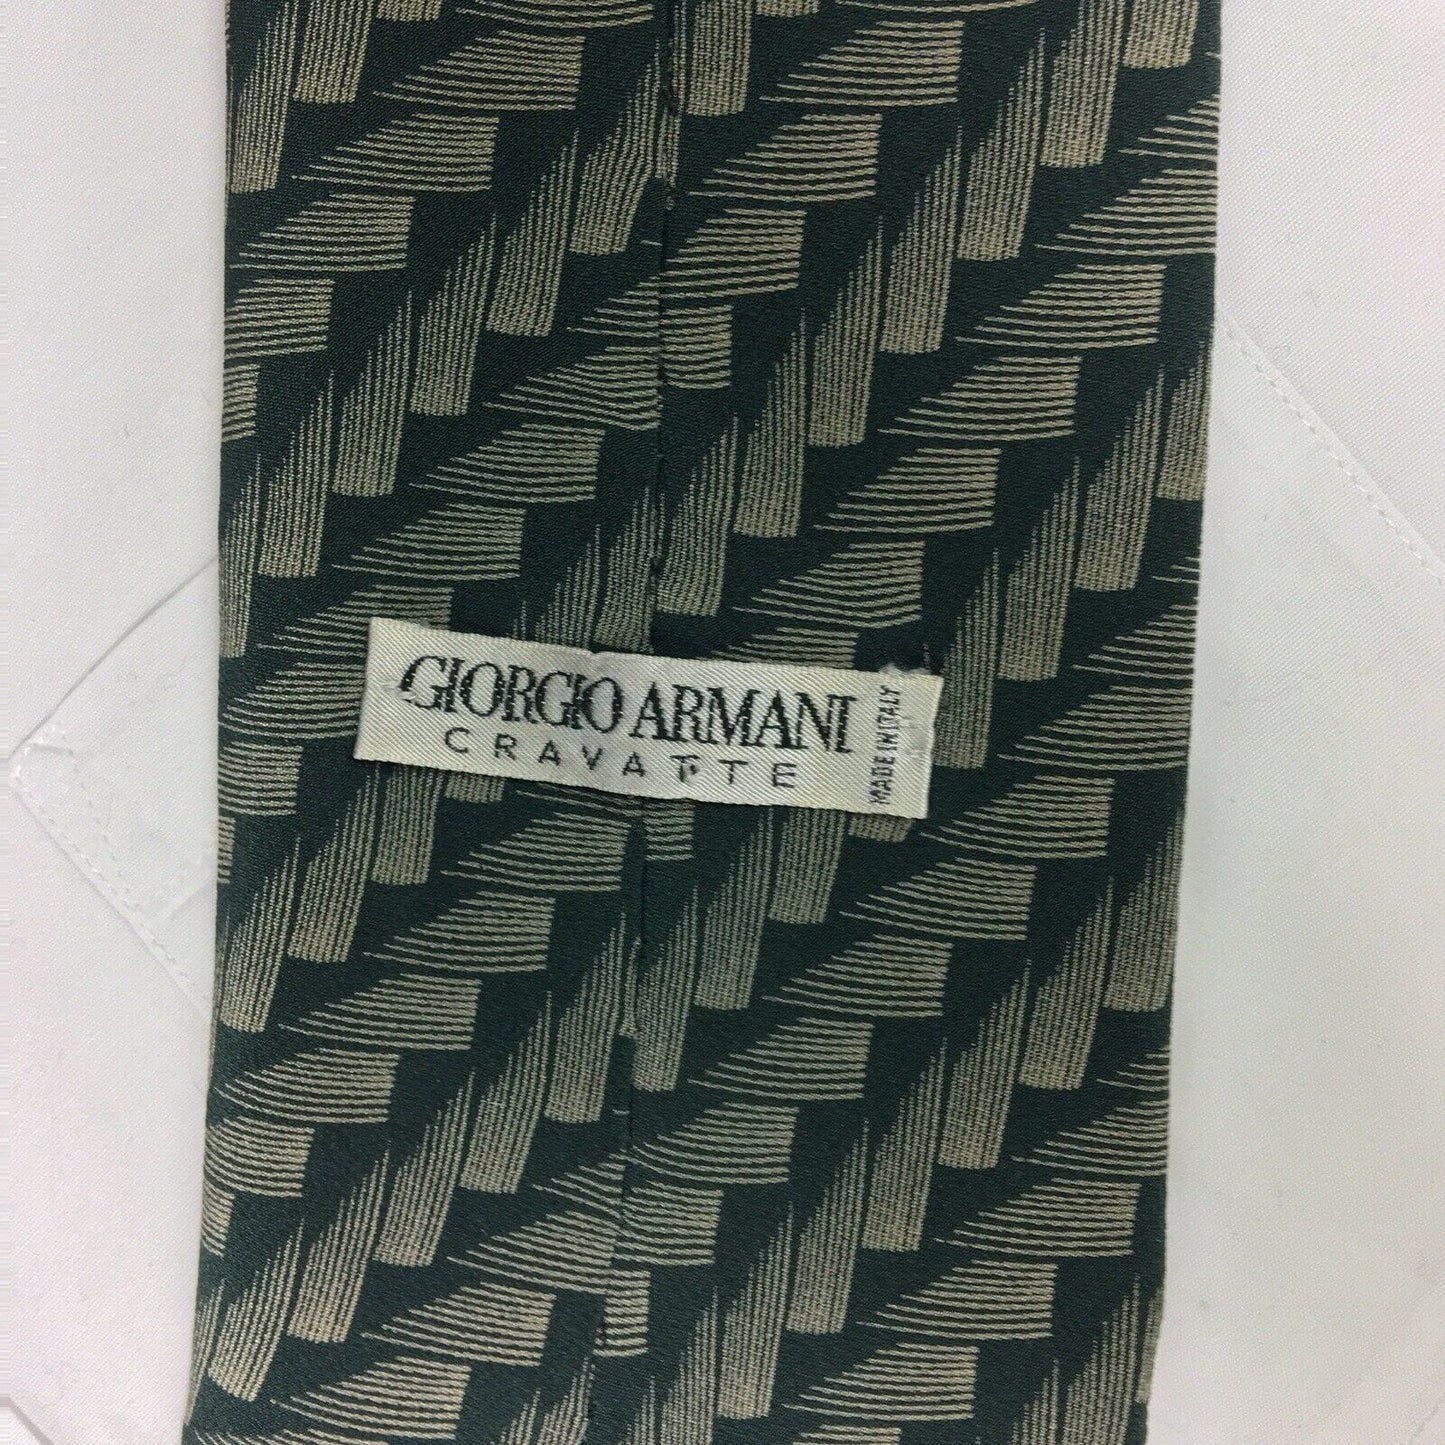 GIORGIO ARMANI Mens Cravatte Green Brushstroke Print 100% Italian Silk Neck Tie 56”